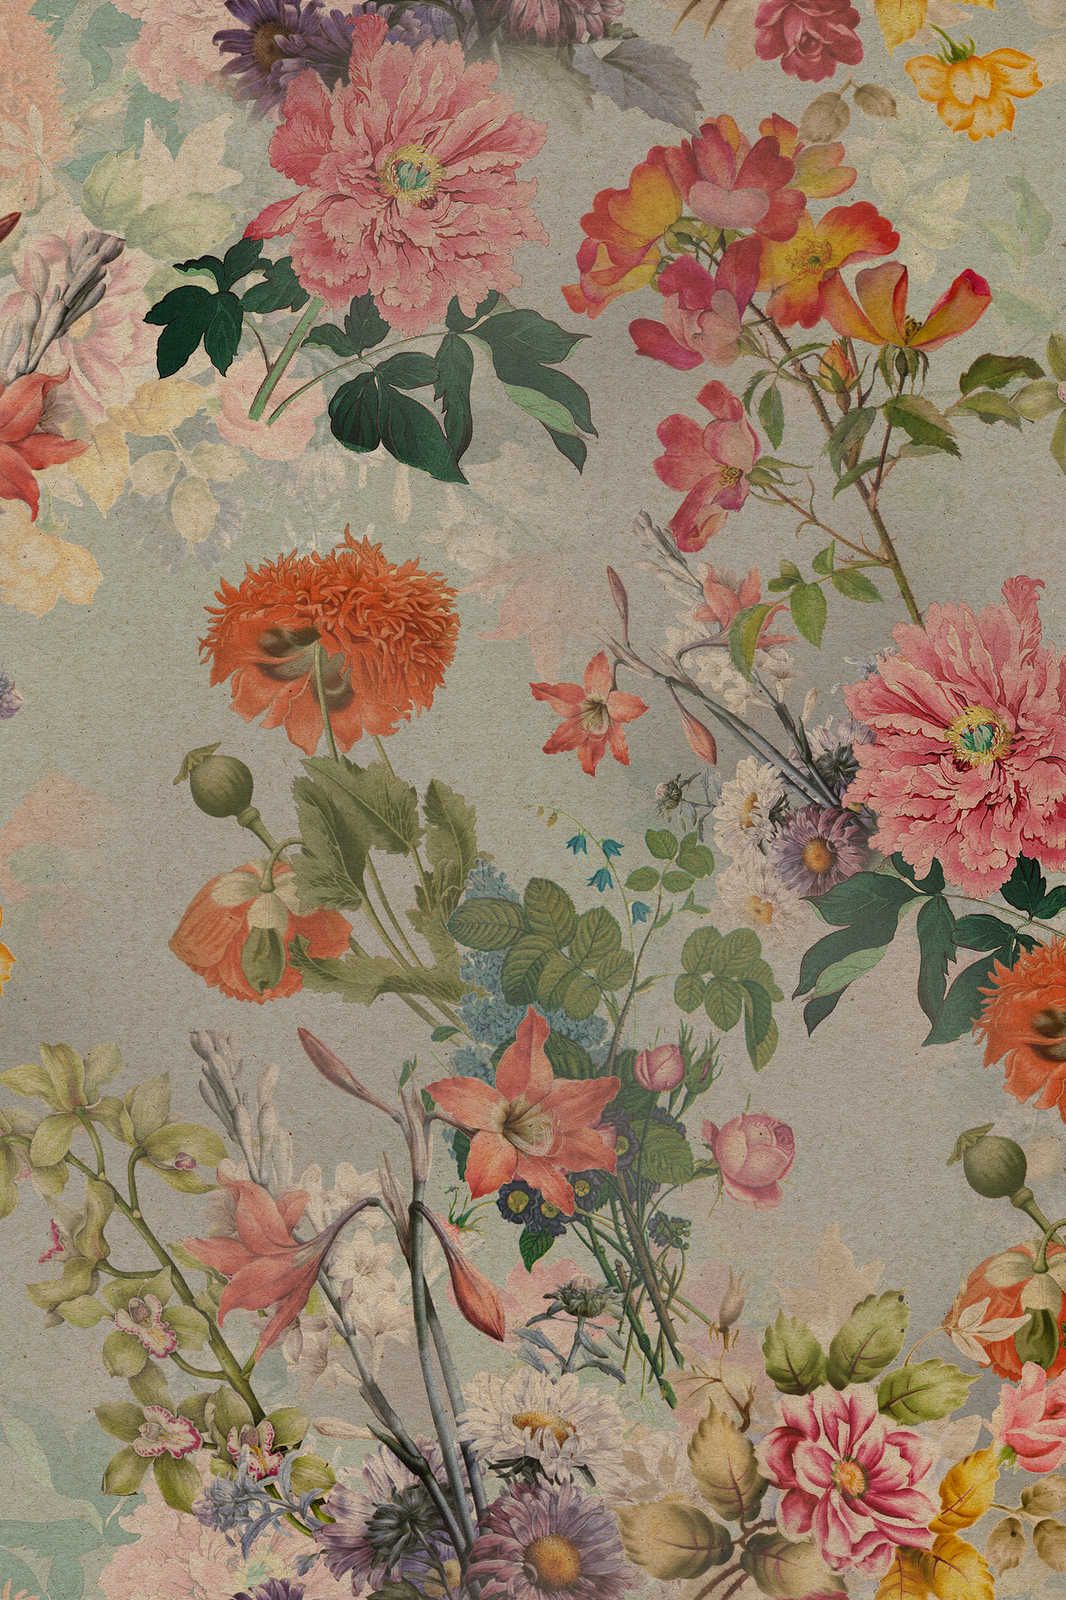             Amelies Home 1 - Quadro su tela in stile rustico romantico con fiori d'epoca - 1,20 m x 0,80 m
        